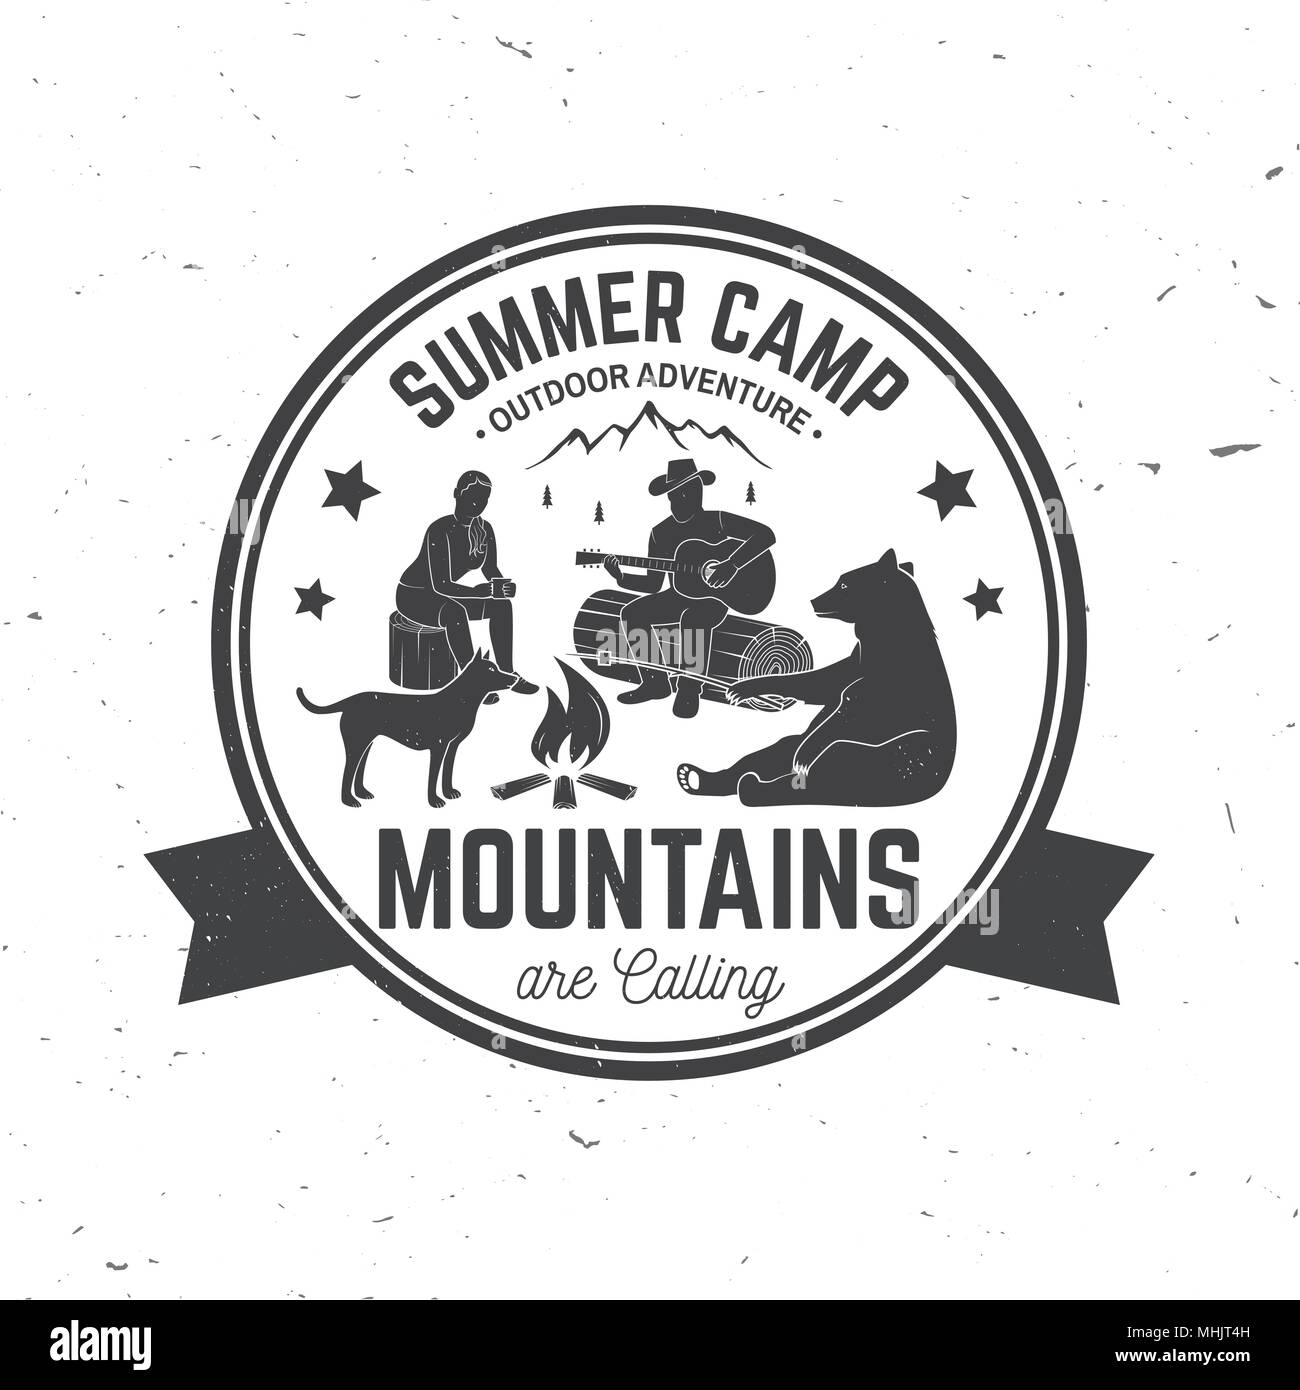 Summer camp. Vector illustration. Stock Vector